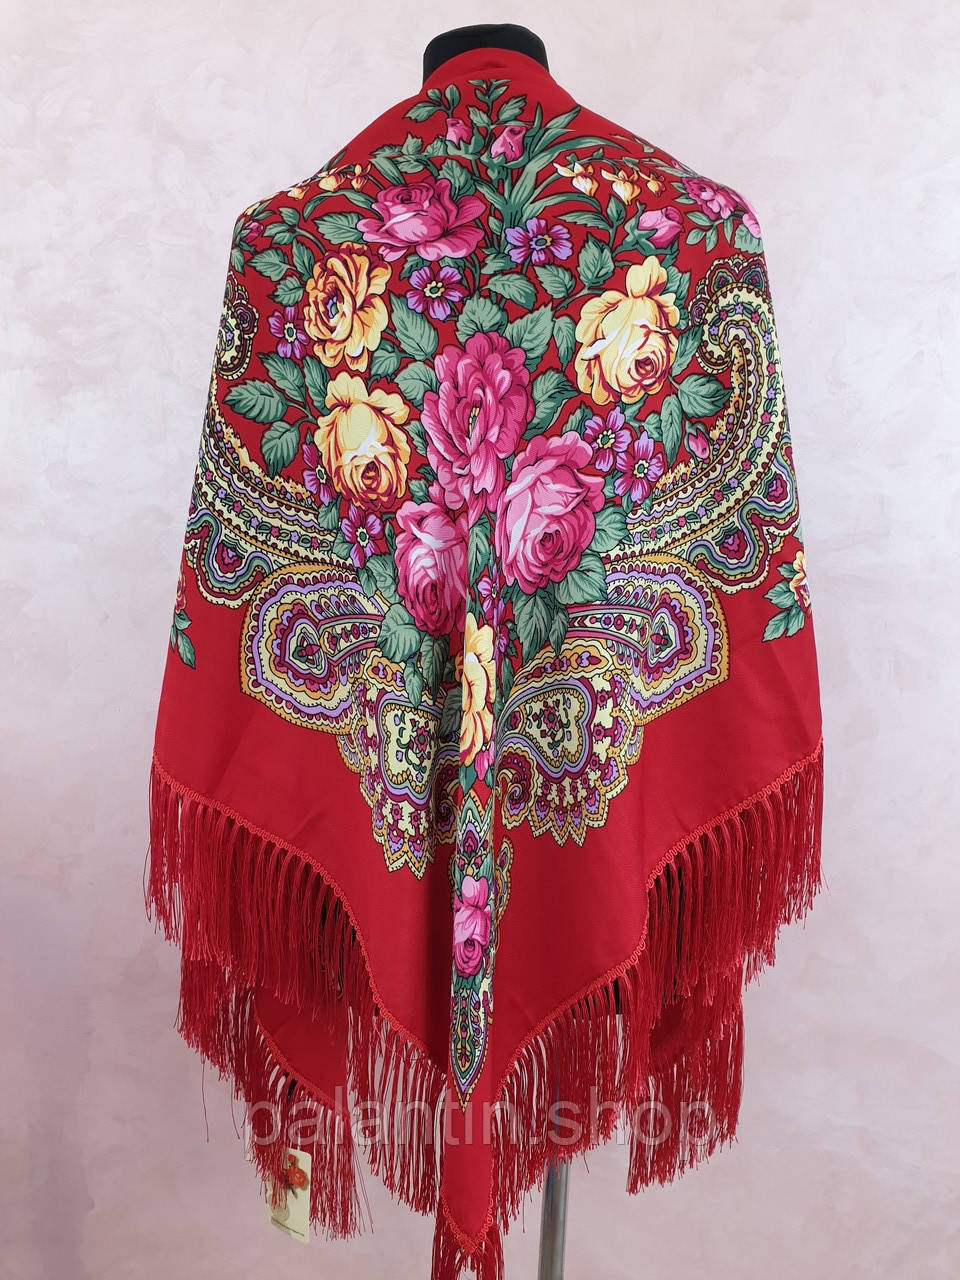 Жіноча хустка Україночка з бахромою в українському стилі 145 на 145 см. Червоний